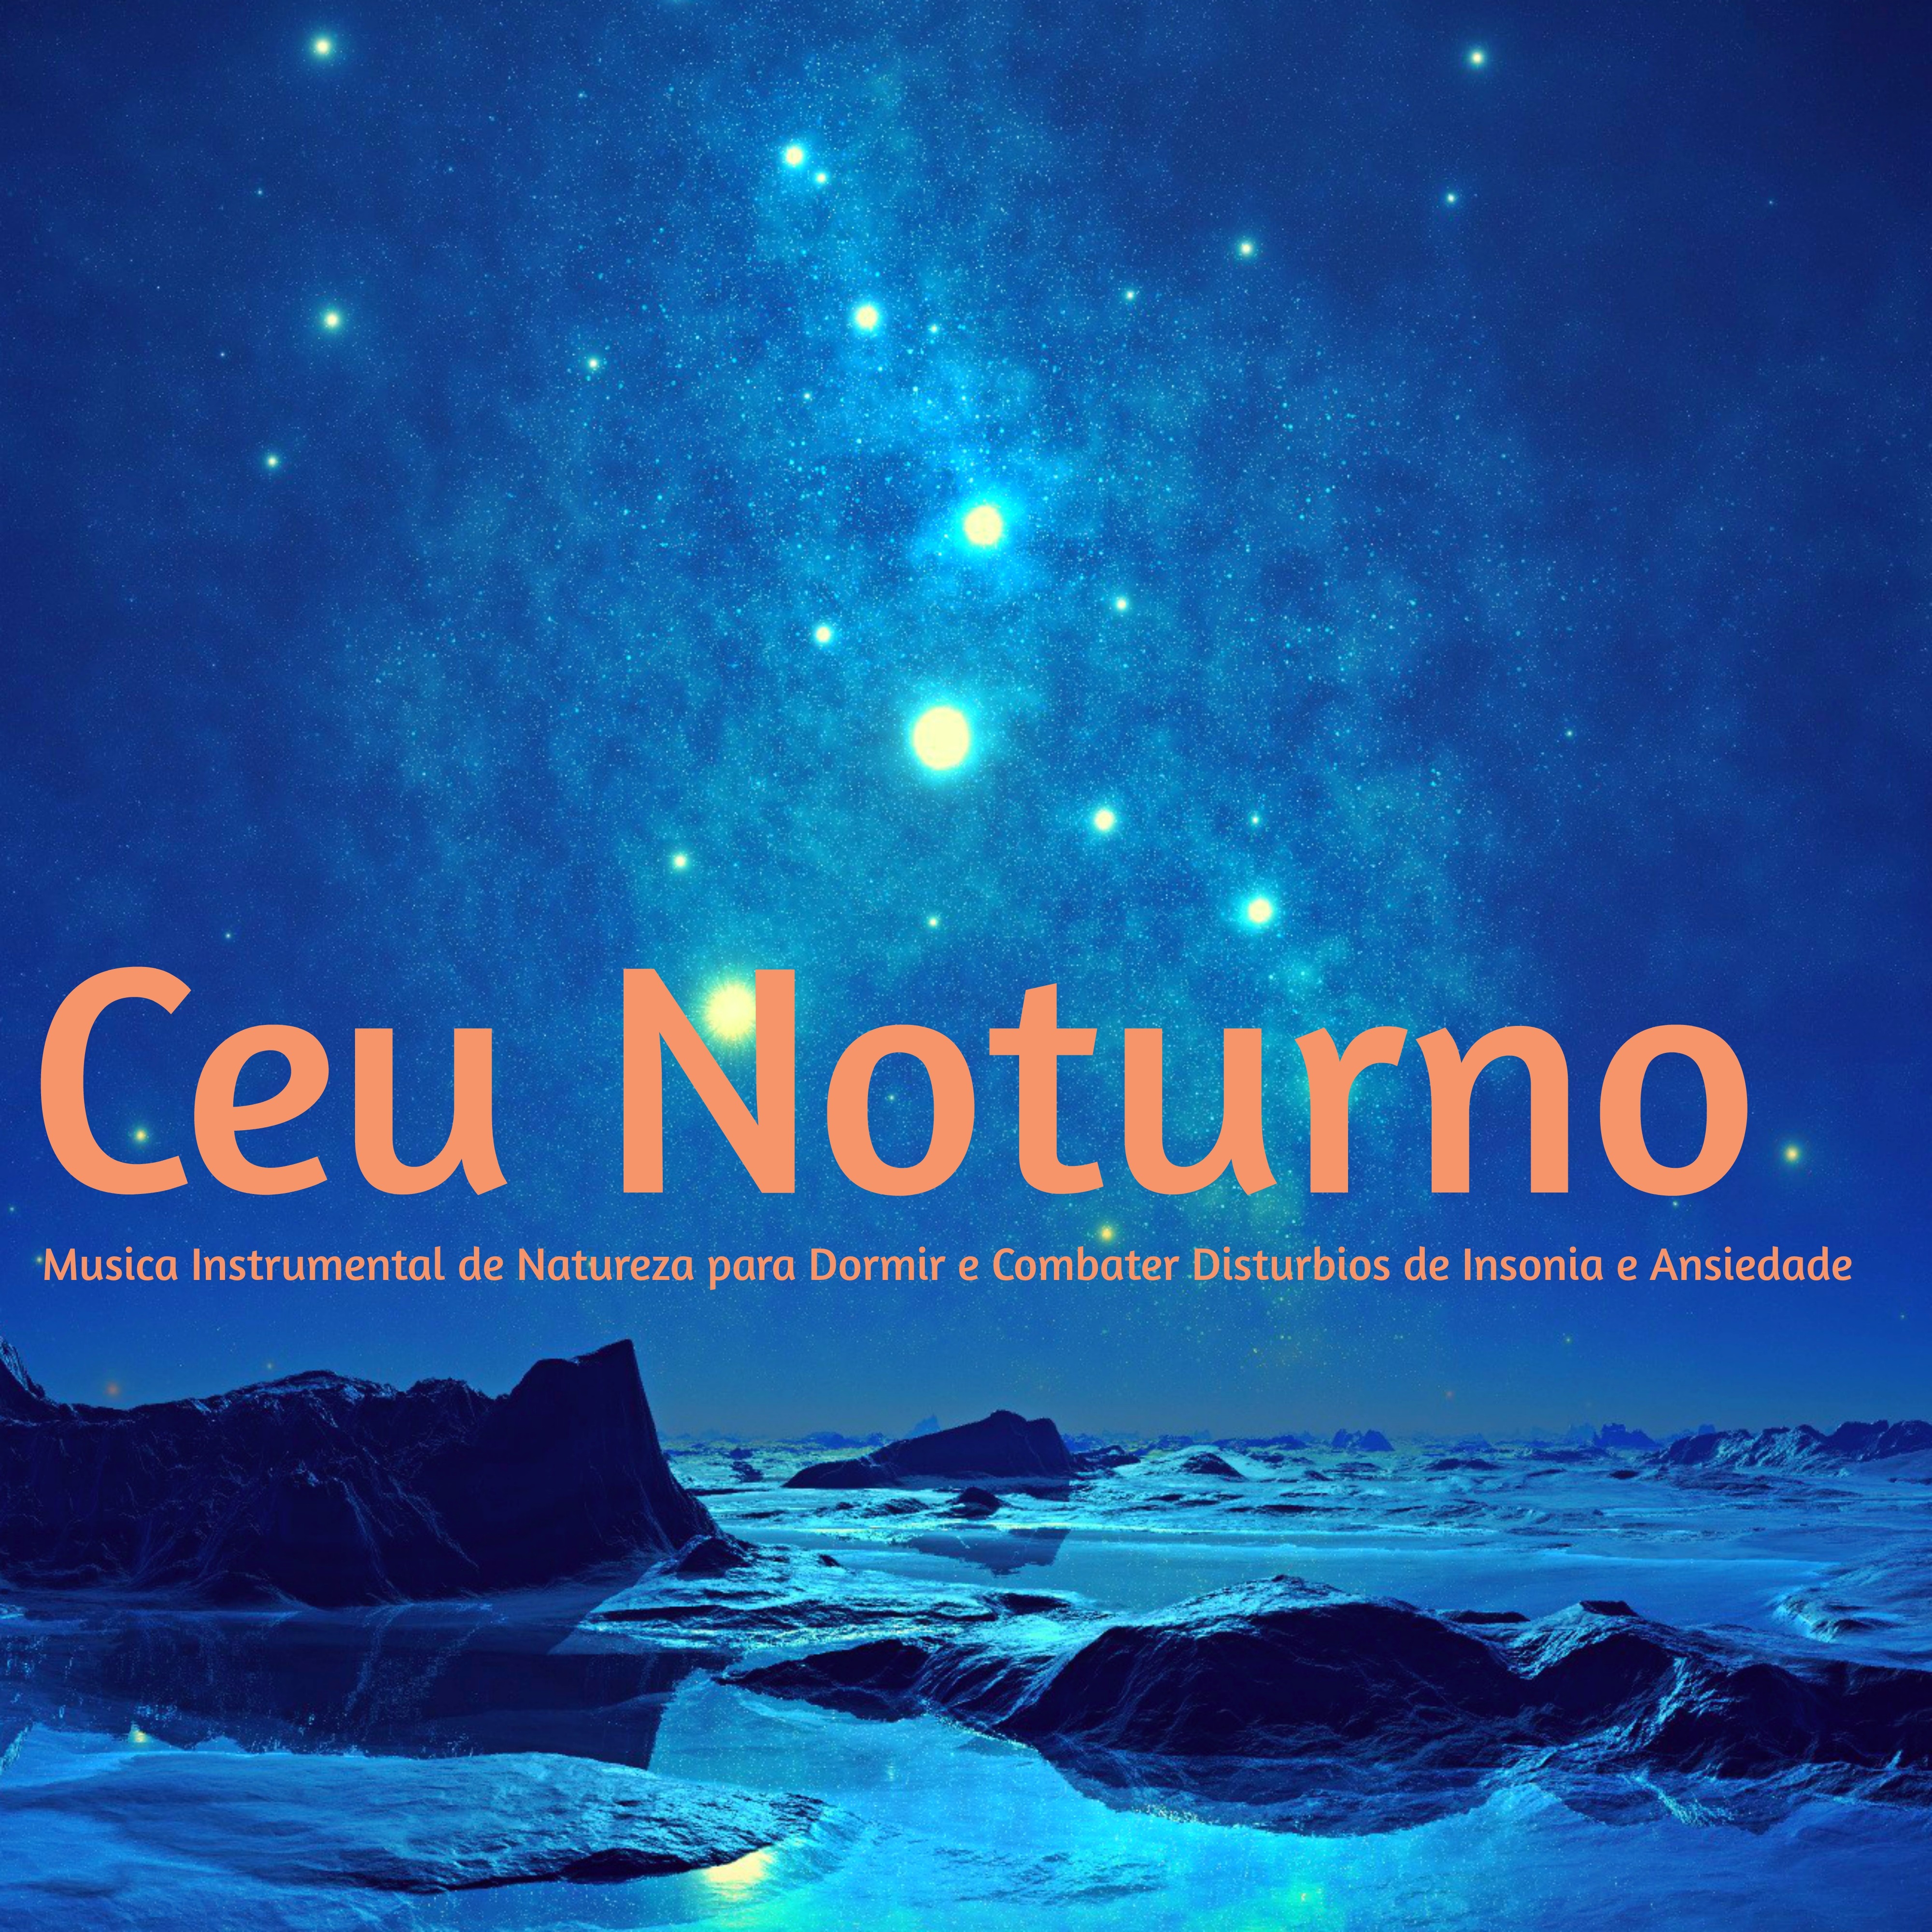 Ceu Noturno – Musica Instrumental de Natureza para Dormir e Combater Disturbios de Insonia e Ansiedade